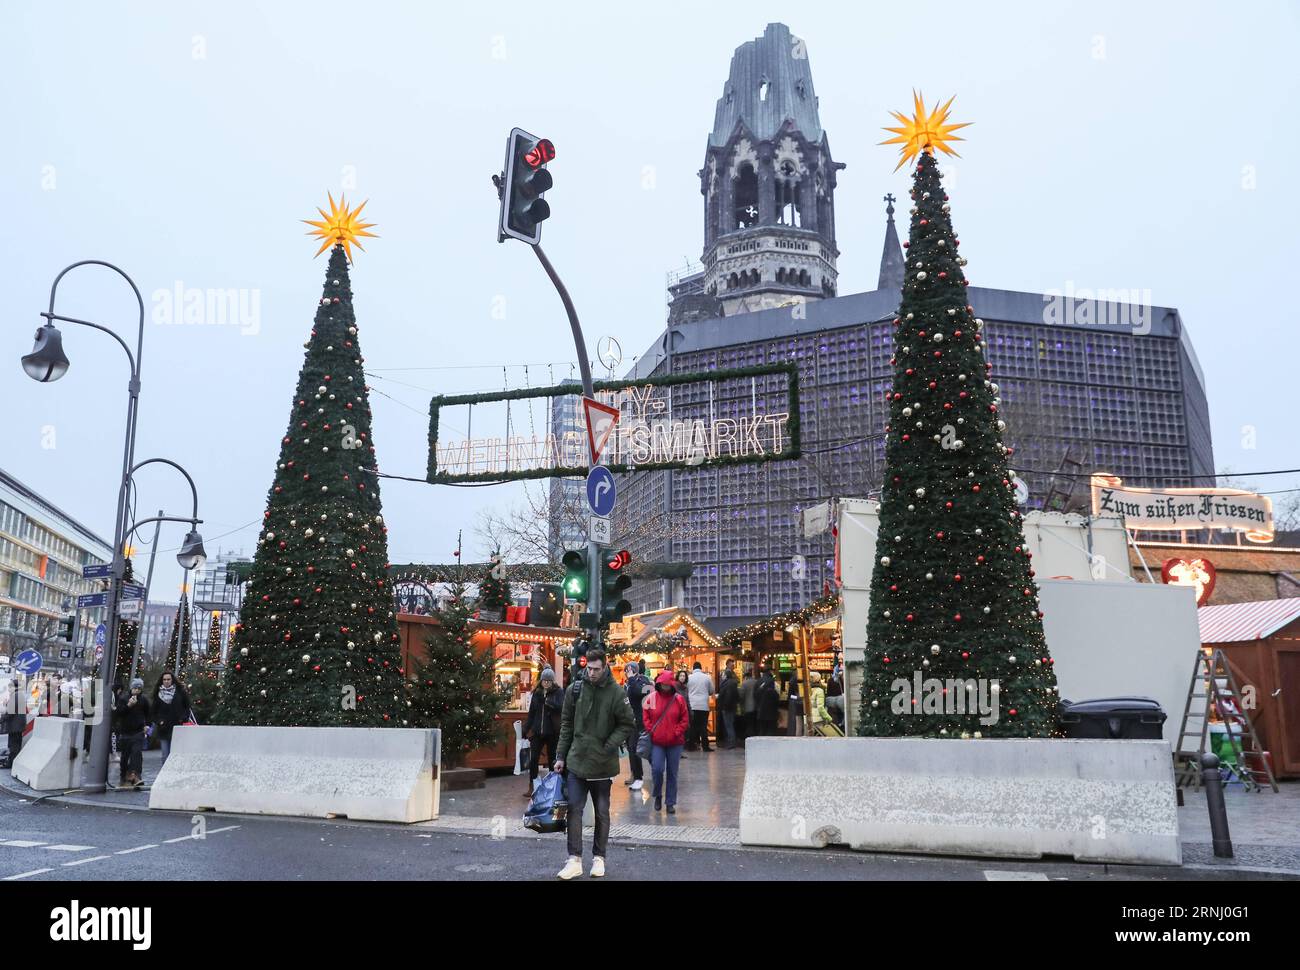 Anschlag in Berlin - Nizzasperren am Breitscheidplatz (161222) -- BERLIN, 22. Dezember 2016 -- Zementbarrieren werden von der Polizei um den wiedereröffneten Weihnachtsmarkt am Breitscheid-Platz in Berlin, Hauptstadt, am 22. Dezember 2016 errichtet. Der Weihnachtsmarkt hier wurde am Montag angegriffen und am Donnerstag wieder eröffnet. ) (gl) DEUTSCHLAND-BERLIN-ANGEGRIFFENER WEIHNACHTSMARKT-WIEDERERÖFFNUNG ShanxYuqi PUBLICATIONxNOTxINxCHN Halt in Berlin bei Verwaltungen Berlin DEZ 22 2016 Zementbarrieren werden von der Polizei AM 22. DEZ 2016 um den wiedereröffneten Weihnachtsmarkt AM Breitscheid-Platz in der Berliner Hauptstadt platziert Stockfoto